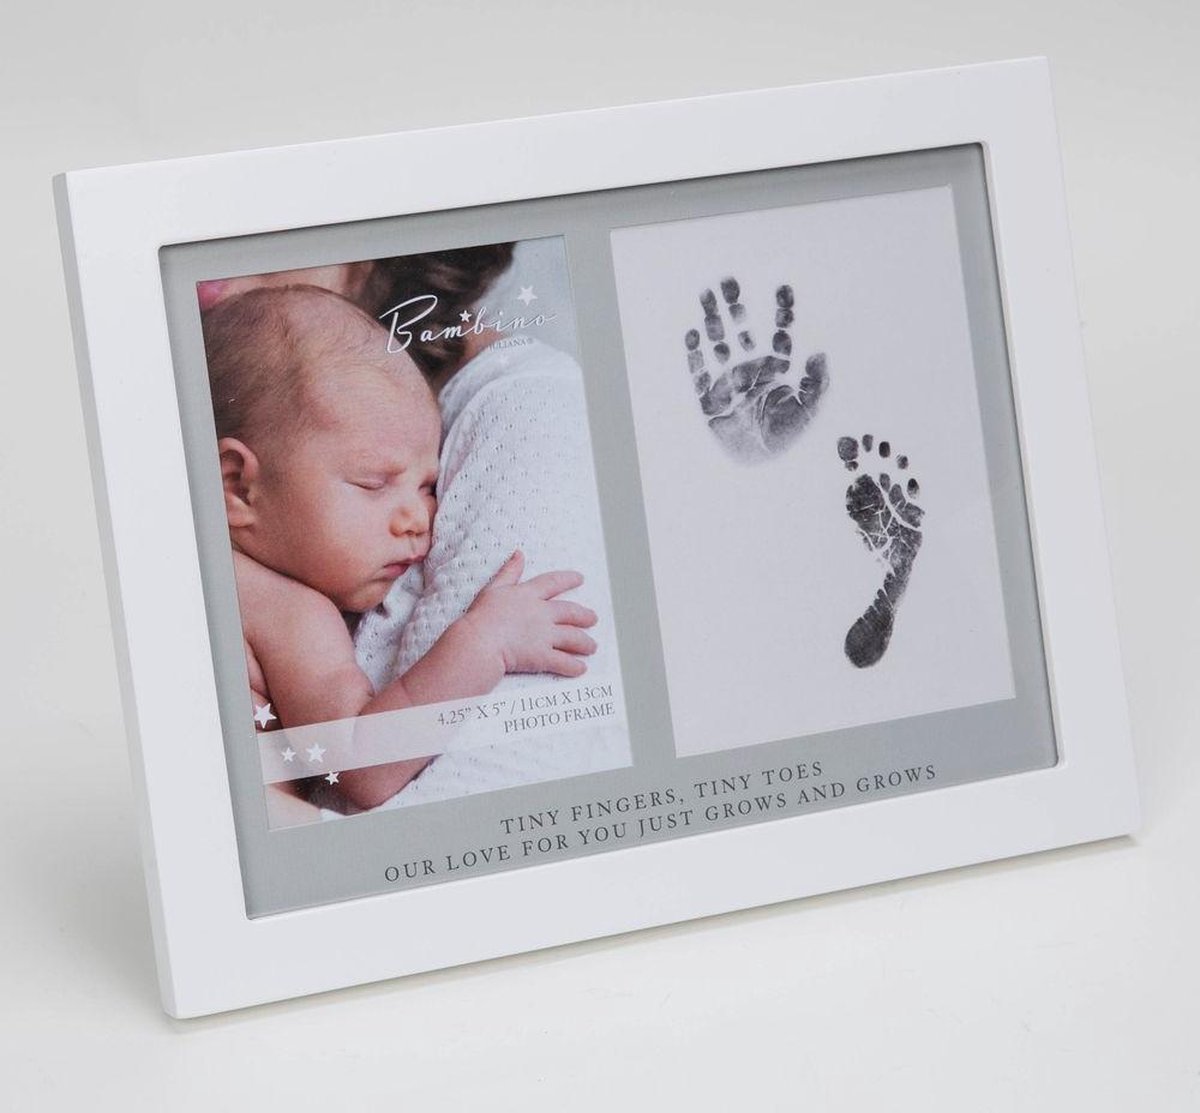 Pour Les cadres iDEAL bebes-photo et de Dans lBébé des souvenirs Mémorables non Toxiques des cadres en bois et Cadeau encre verre acrylique empreintes 